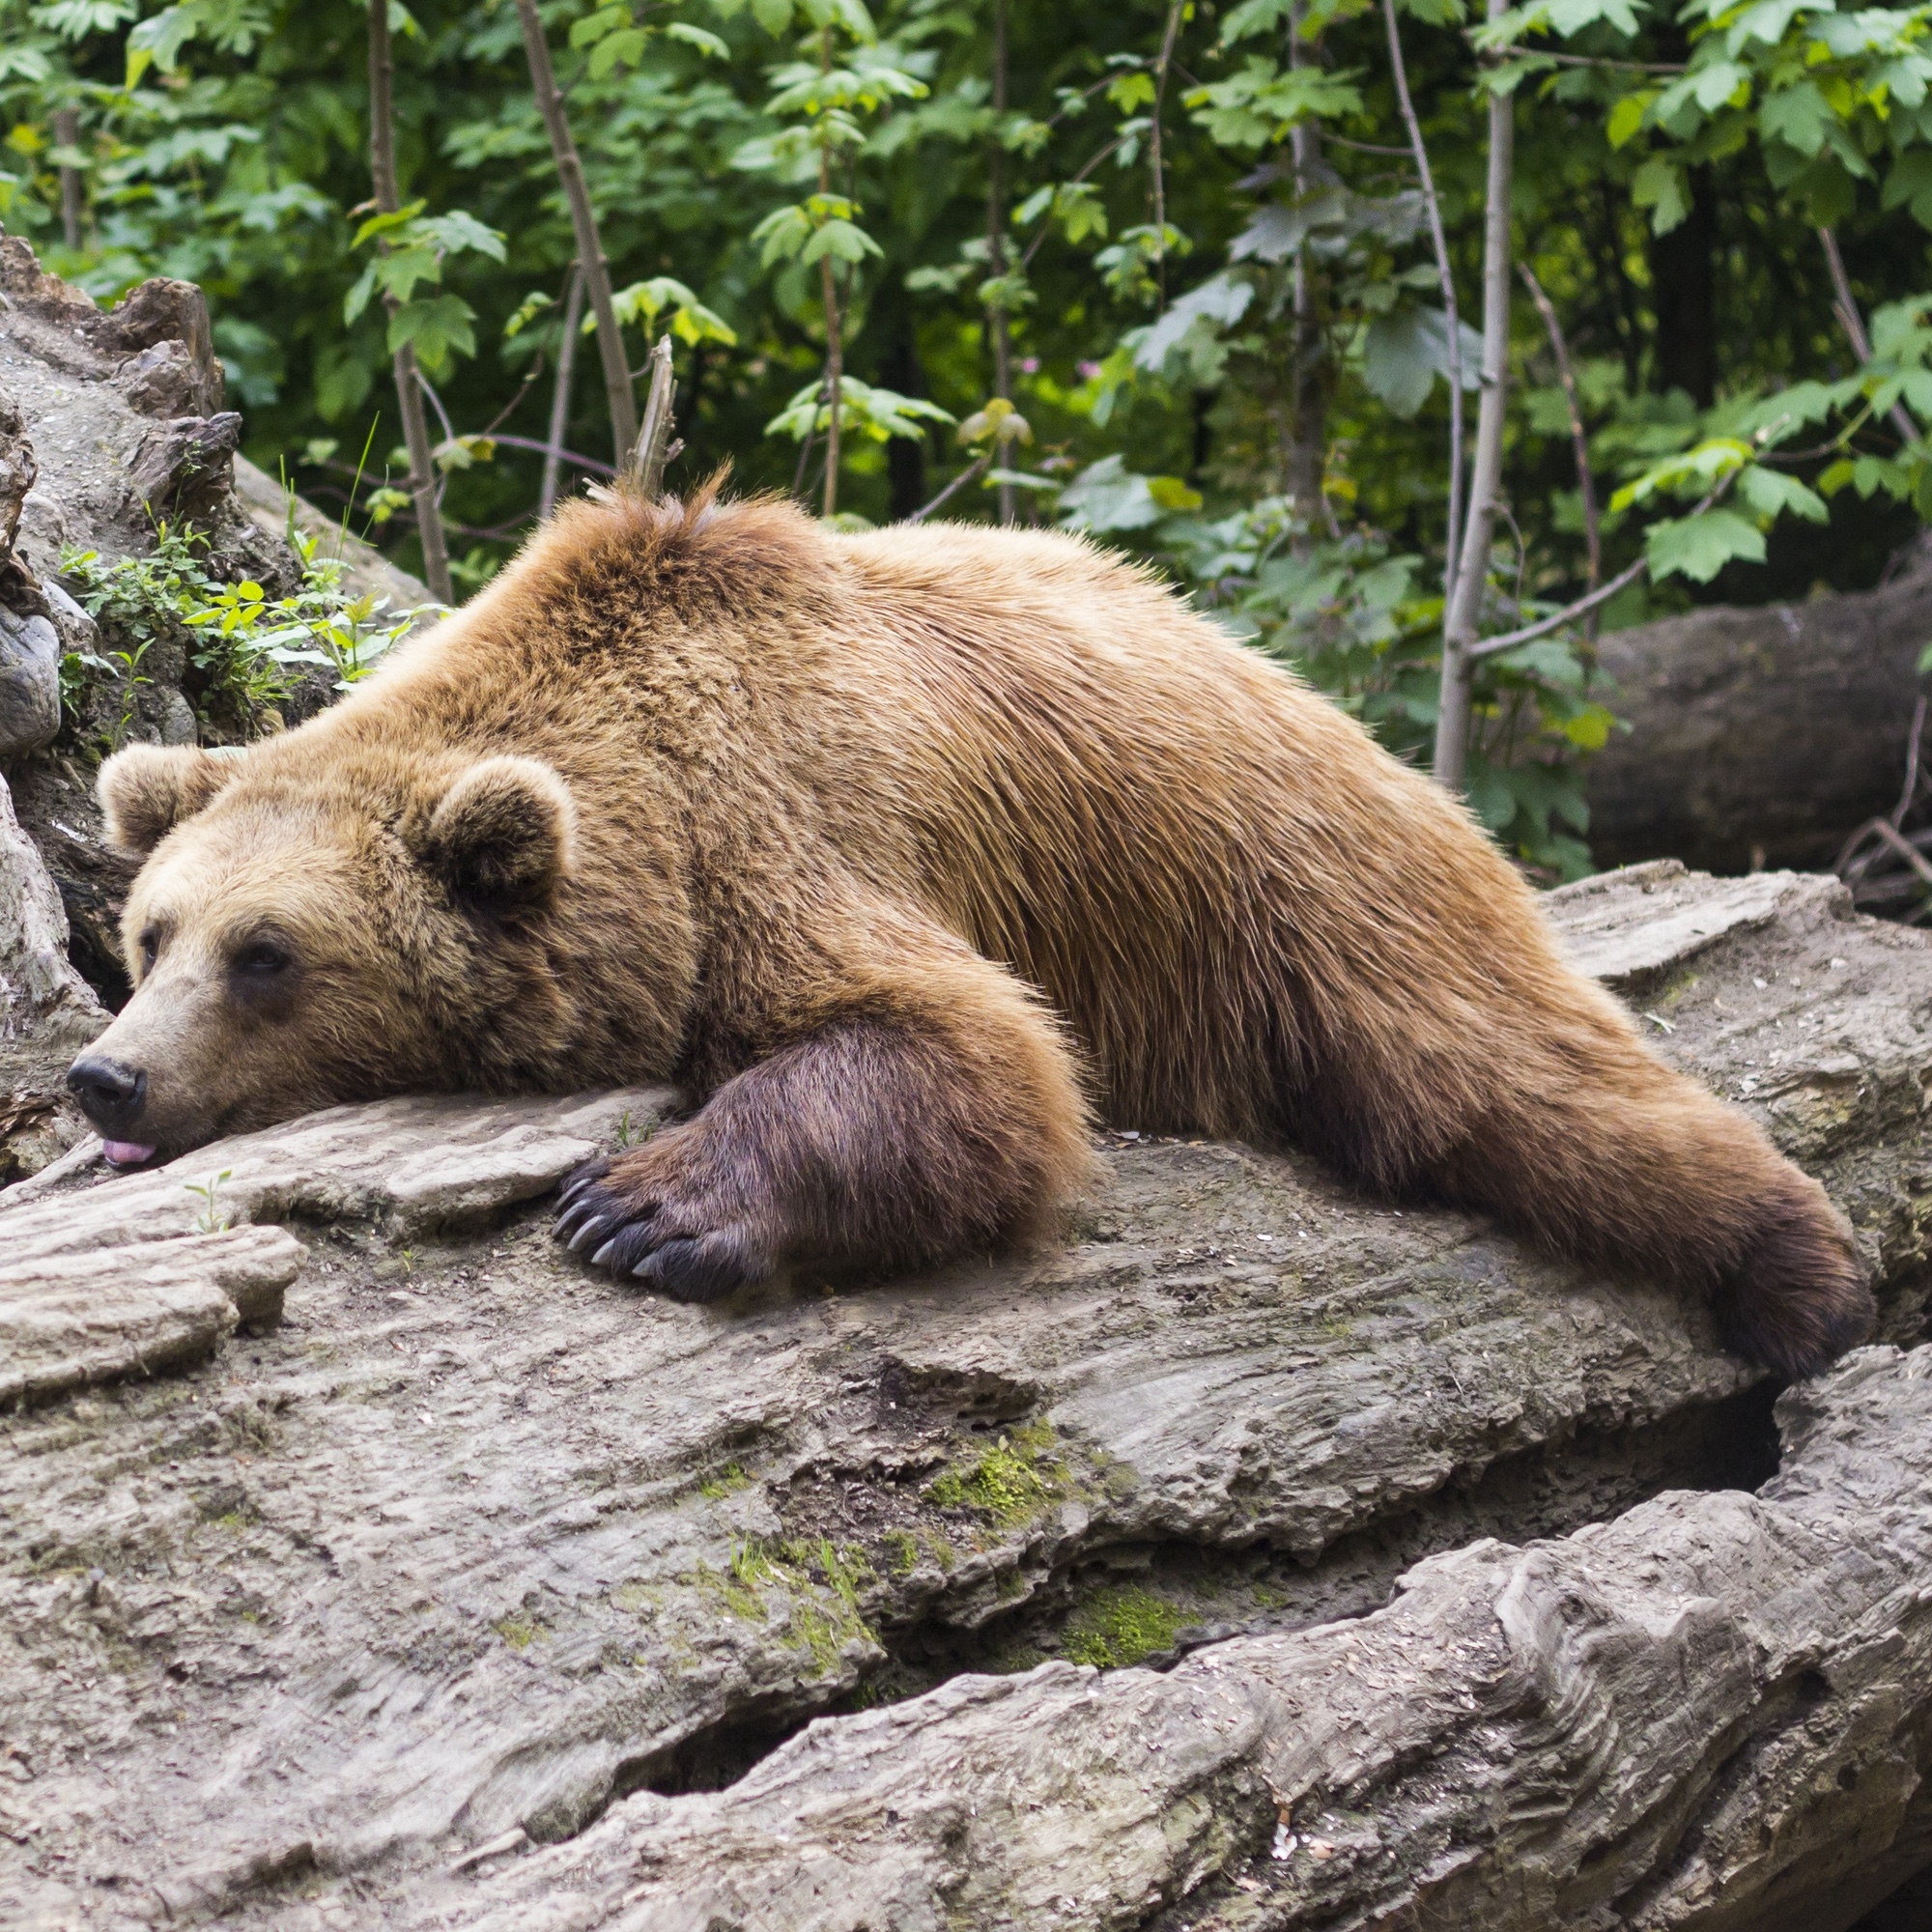 Foto: Schlafender Bär